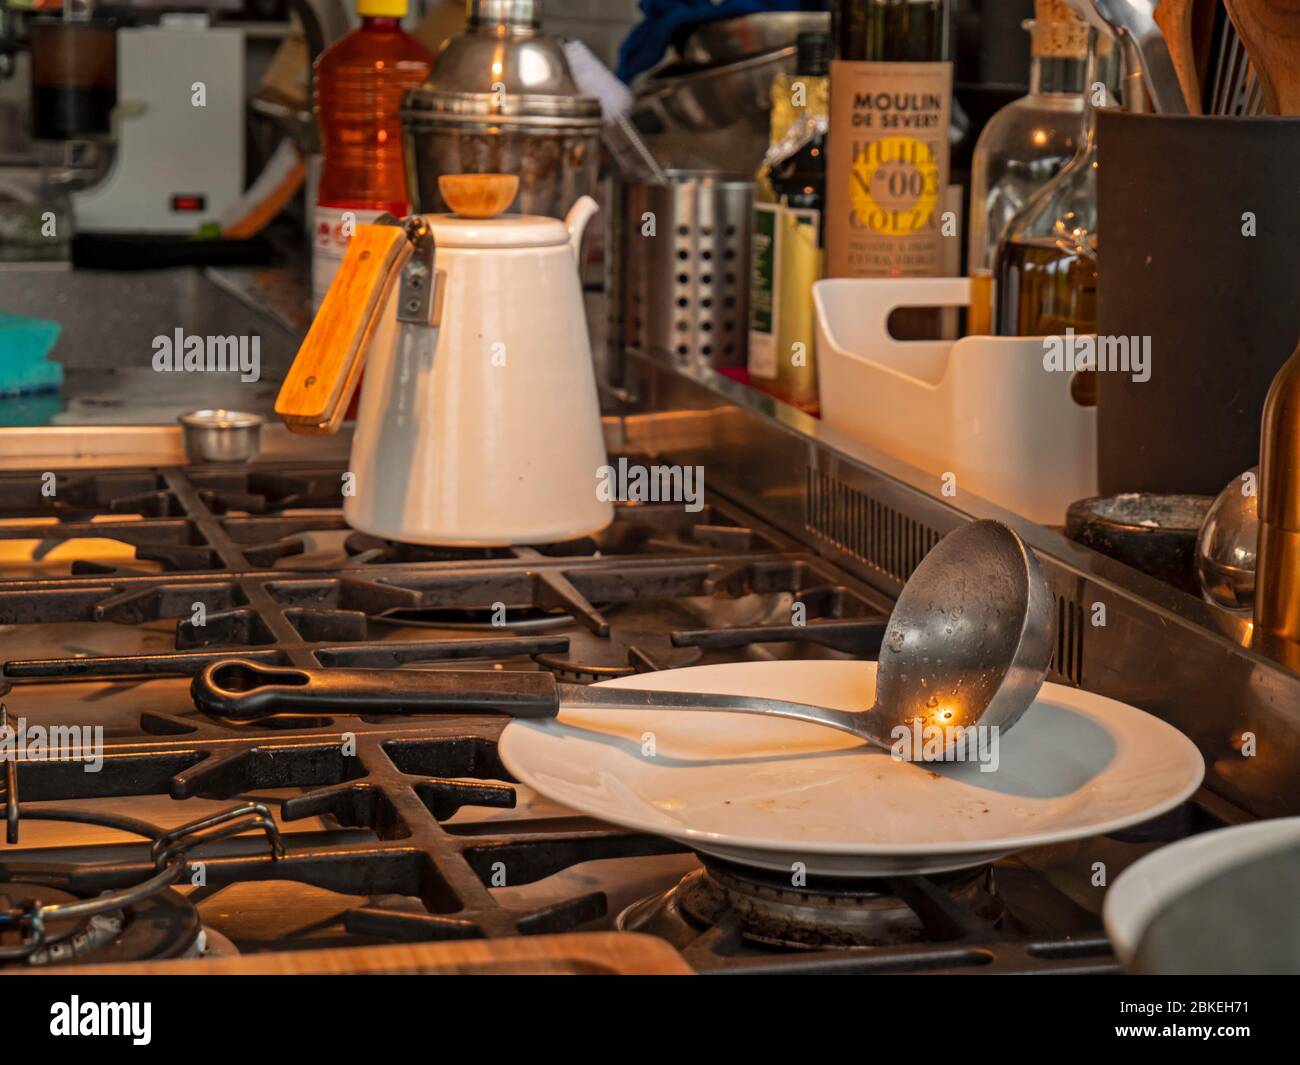 Una caraffa di acqua calda in una cucina rustica. Il jut si siede sulla parte superiore del forno con altri utensili da cucina intorno ad esso nella cucina moderna e rustica. Foto Stock